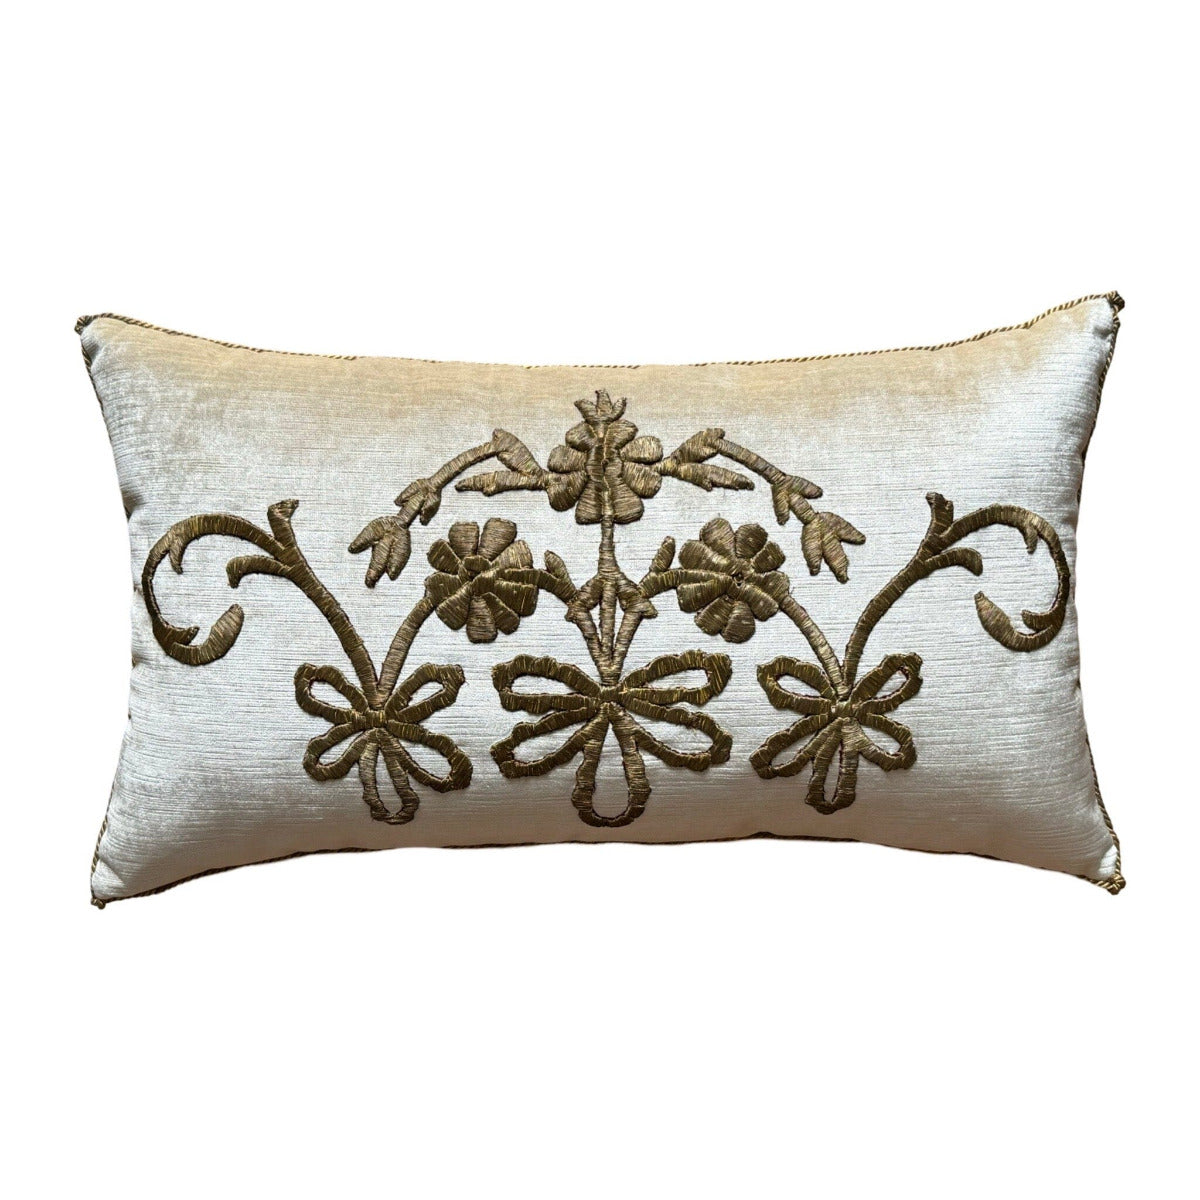 Antique Ottoman Empire Gold Metallic Embroidery (#E030424 | 13 x 22.5") New Pillows B. Viz Design 